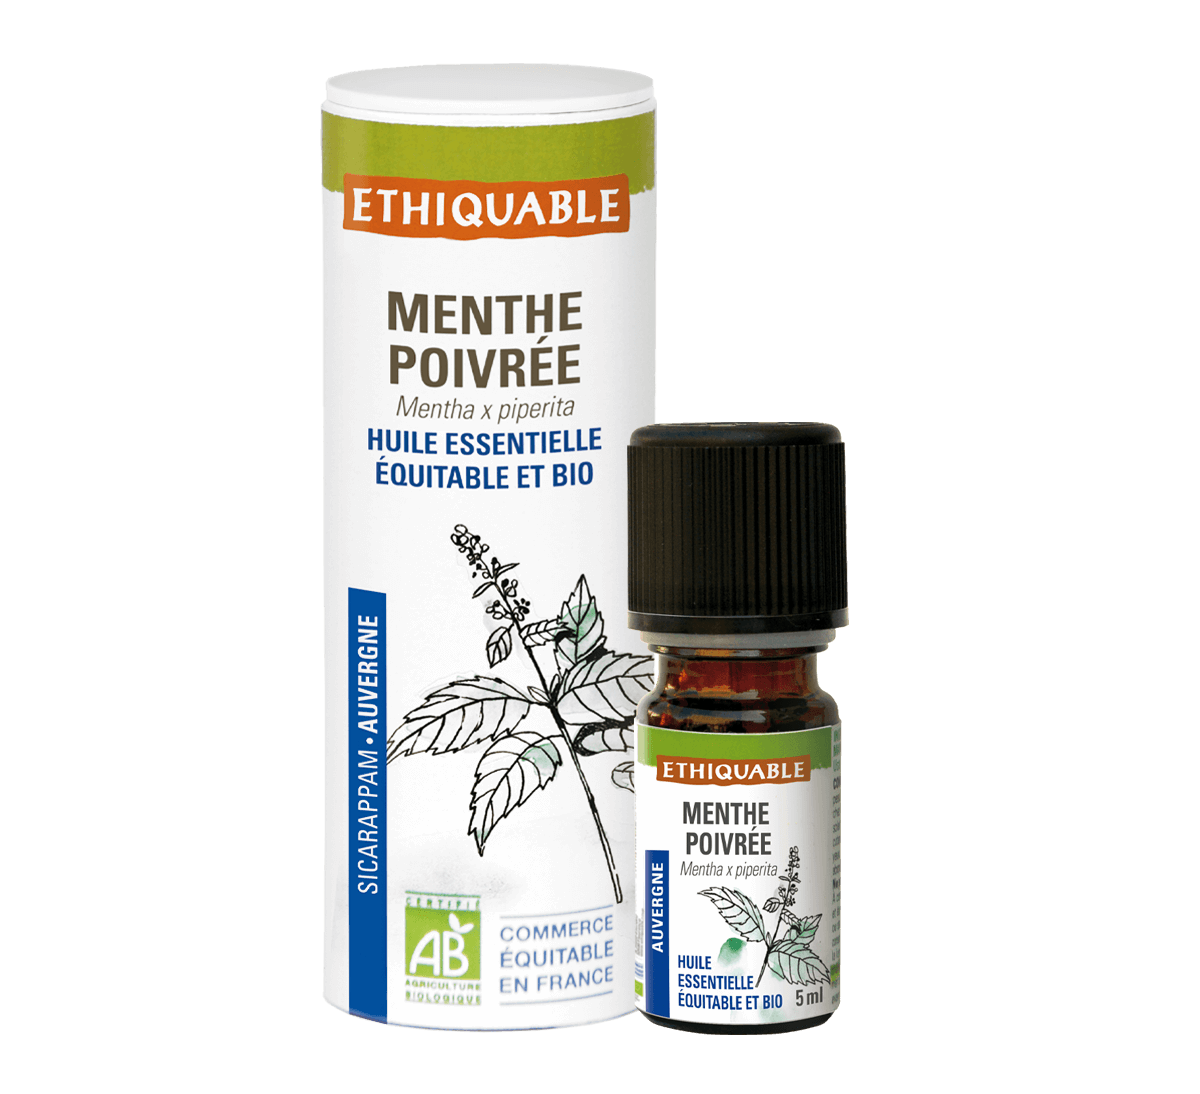 Ethiquable - Huile essentielle de menthe poivrée bio française issue du commerce équitable